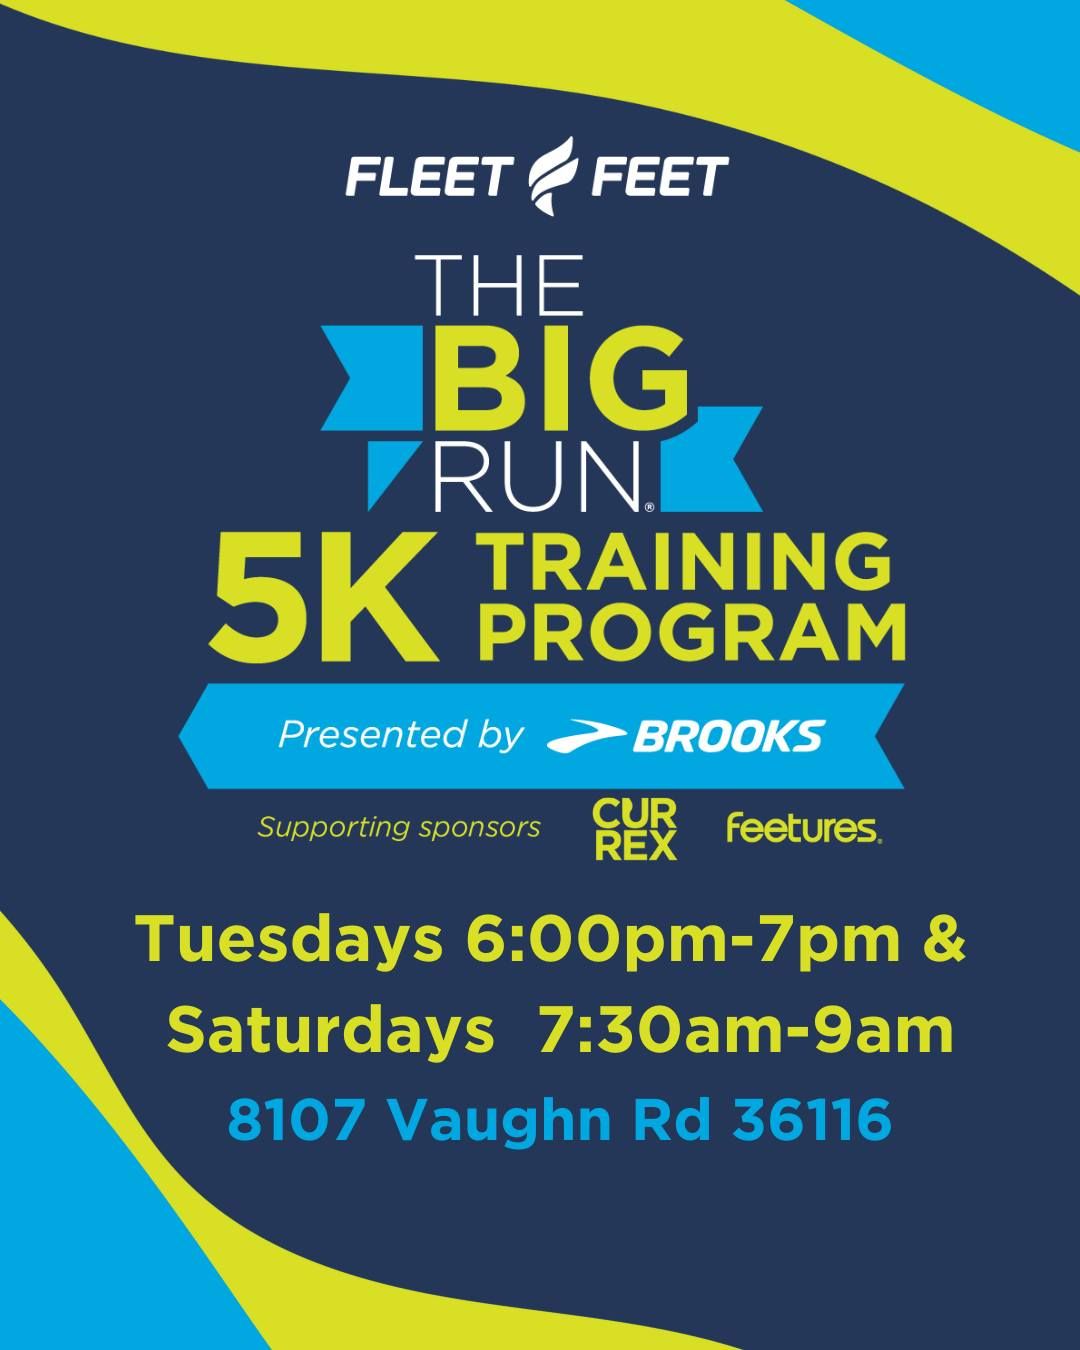 The Big Run 5K Training Program